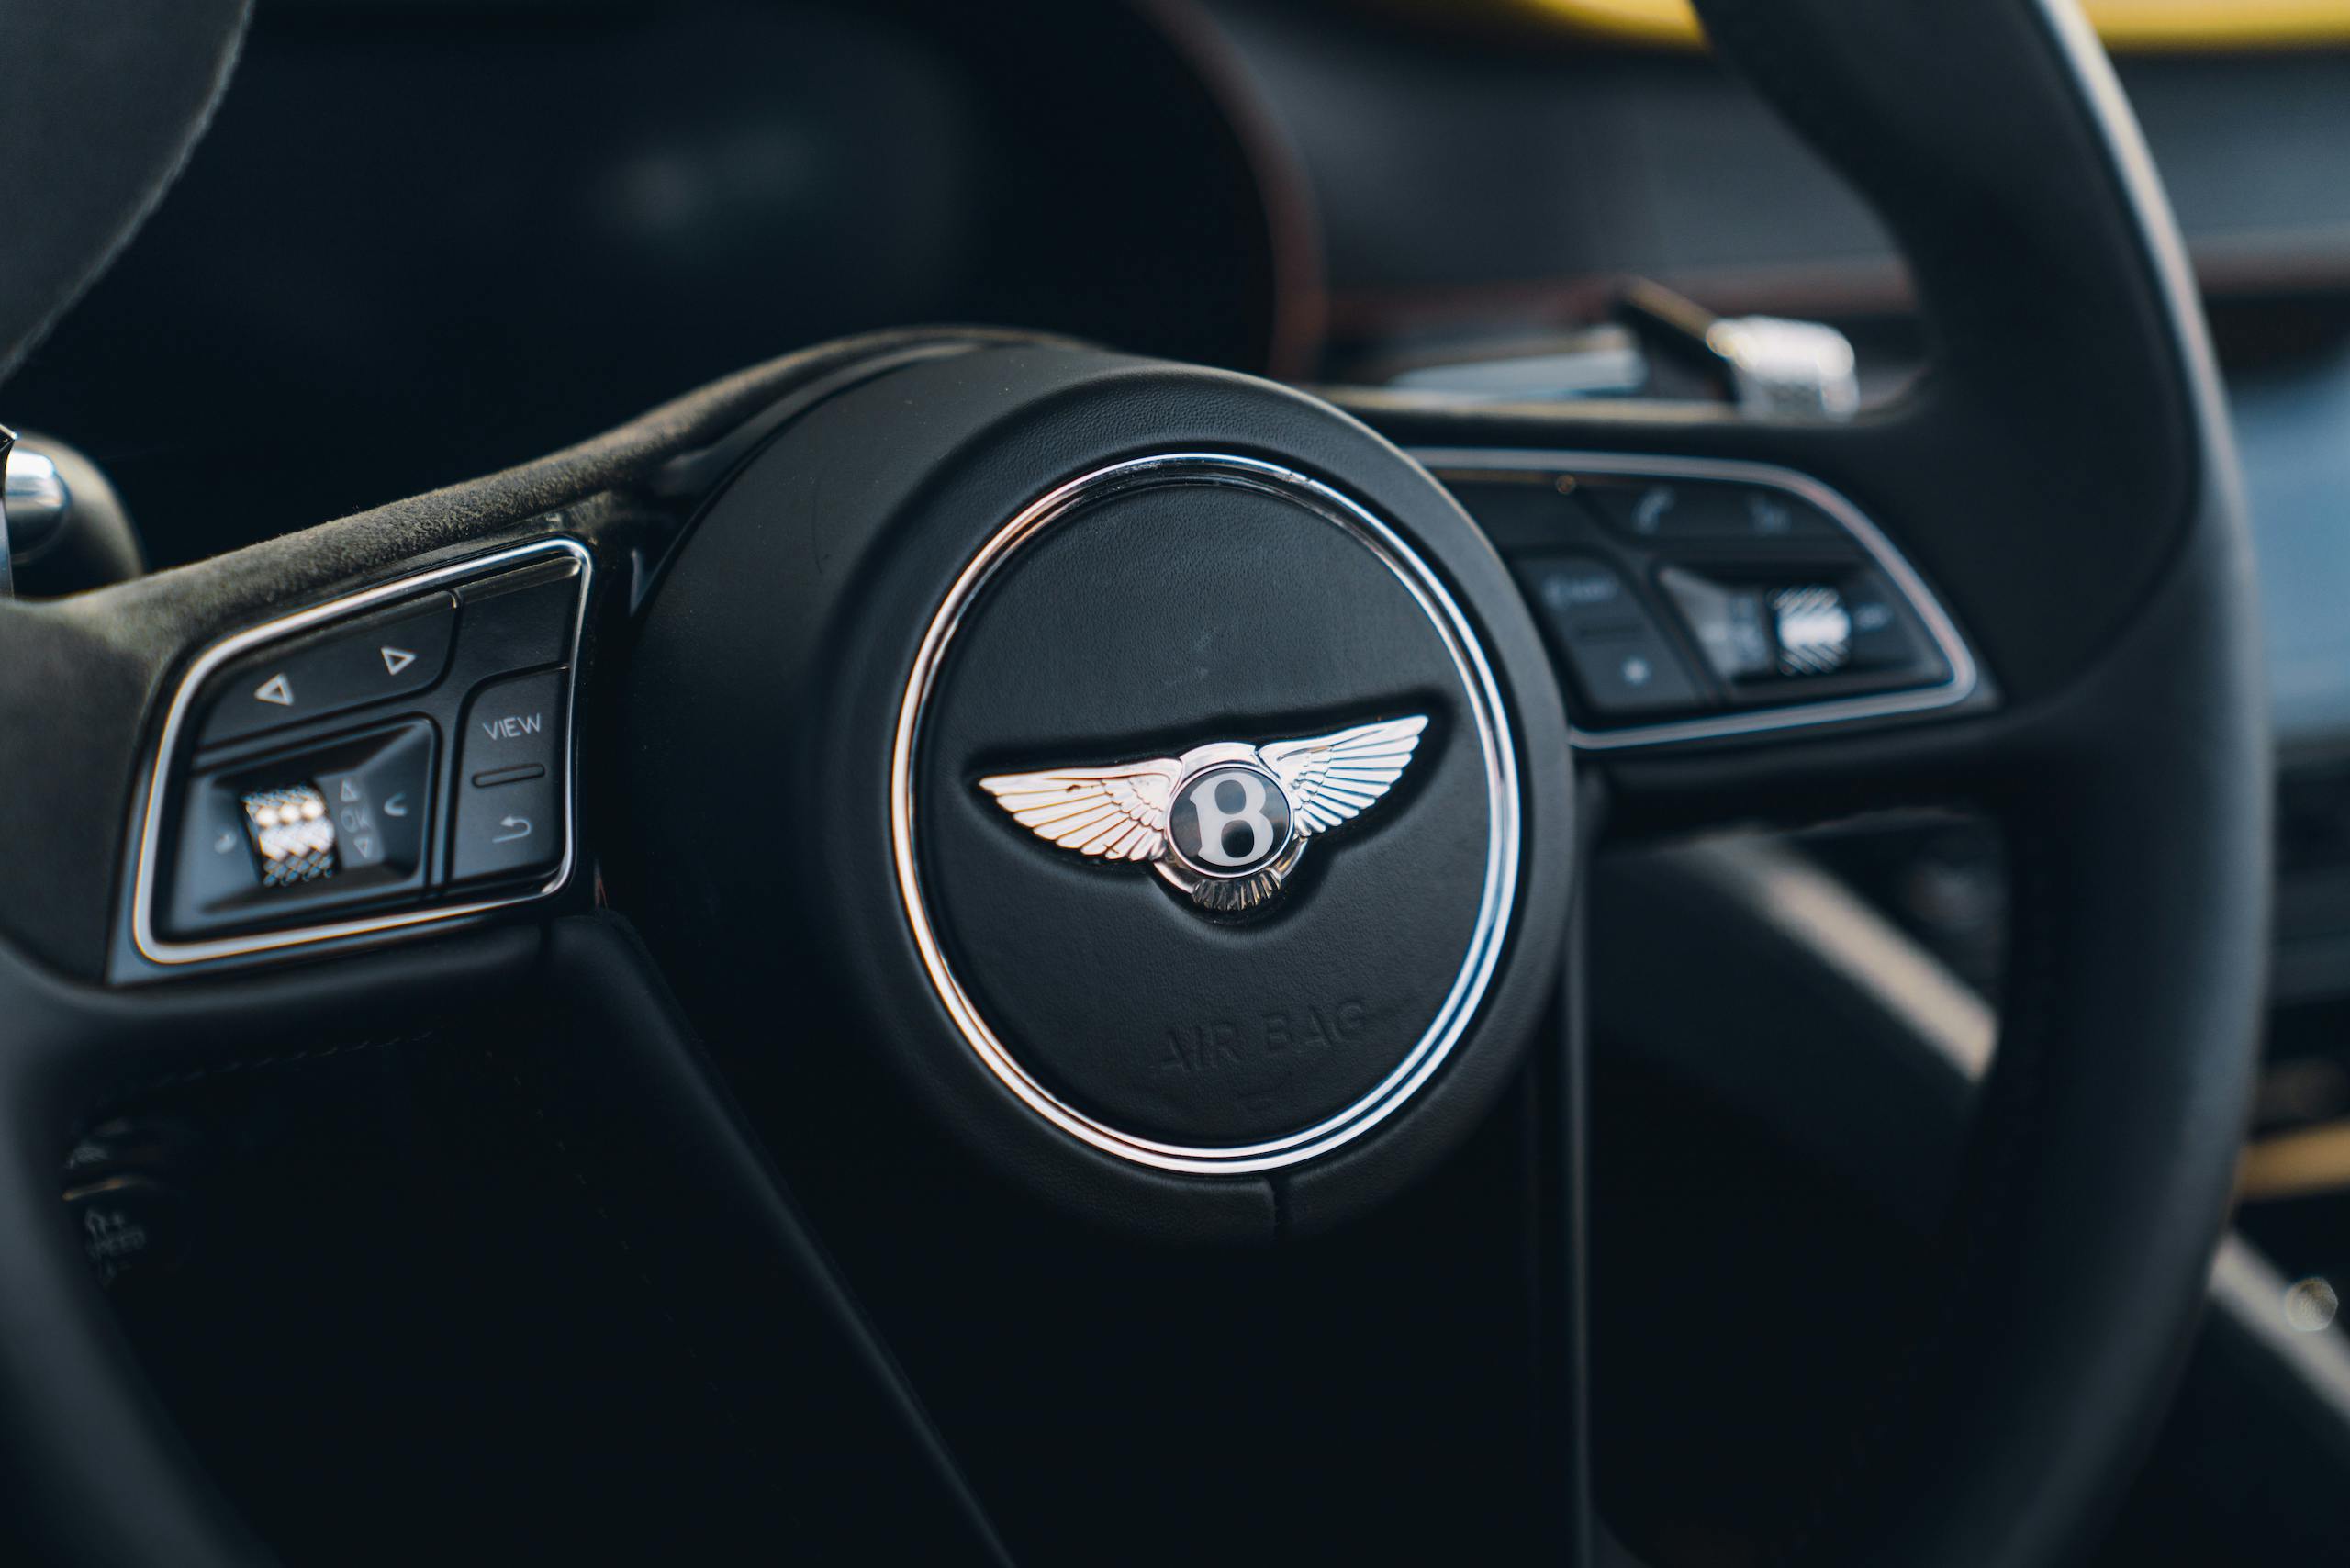 2021 Bentley Bacalar interior steering wheel detail